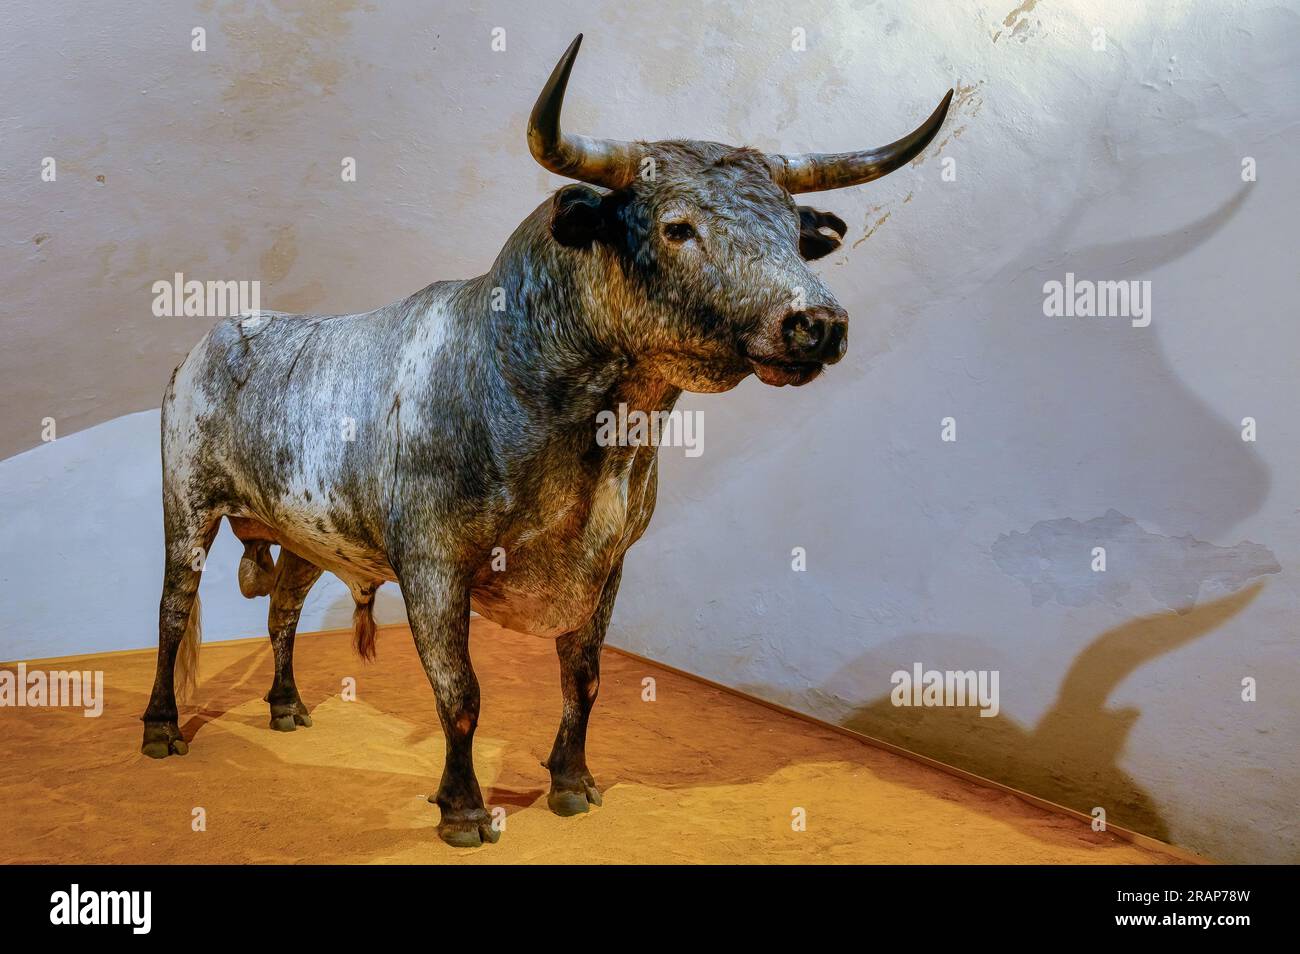 Sevilla, Spanien - 20. Januar 2023: Skulptur eines Stiers im Stierkampfarena-Gebäude. Die Statue zeigt die Stärke und Kraft des Tieres. Stockfoto